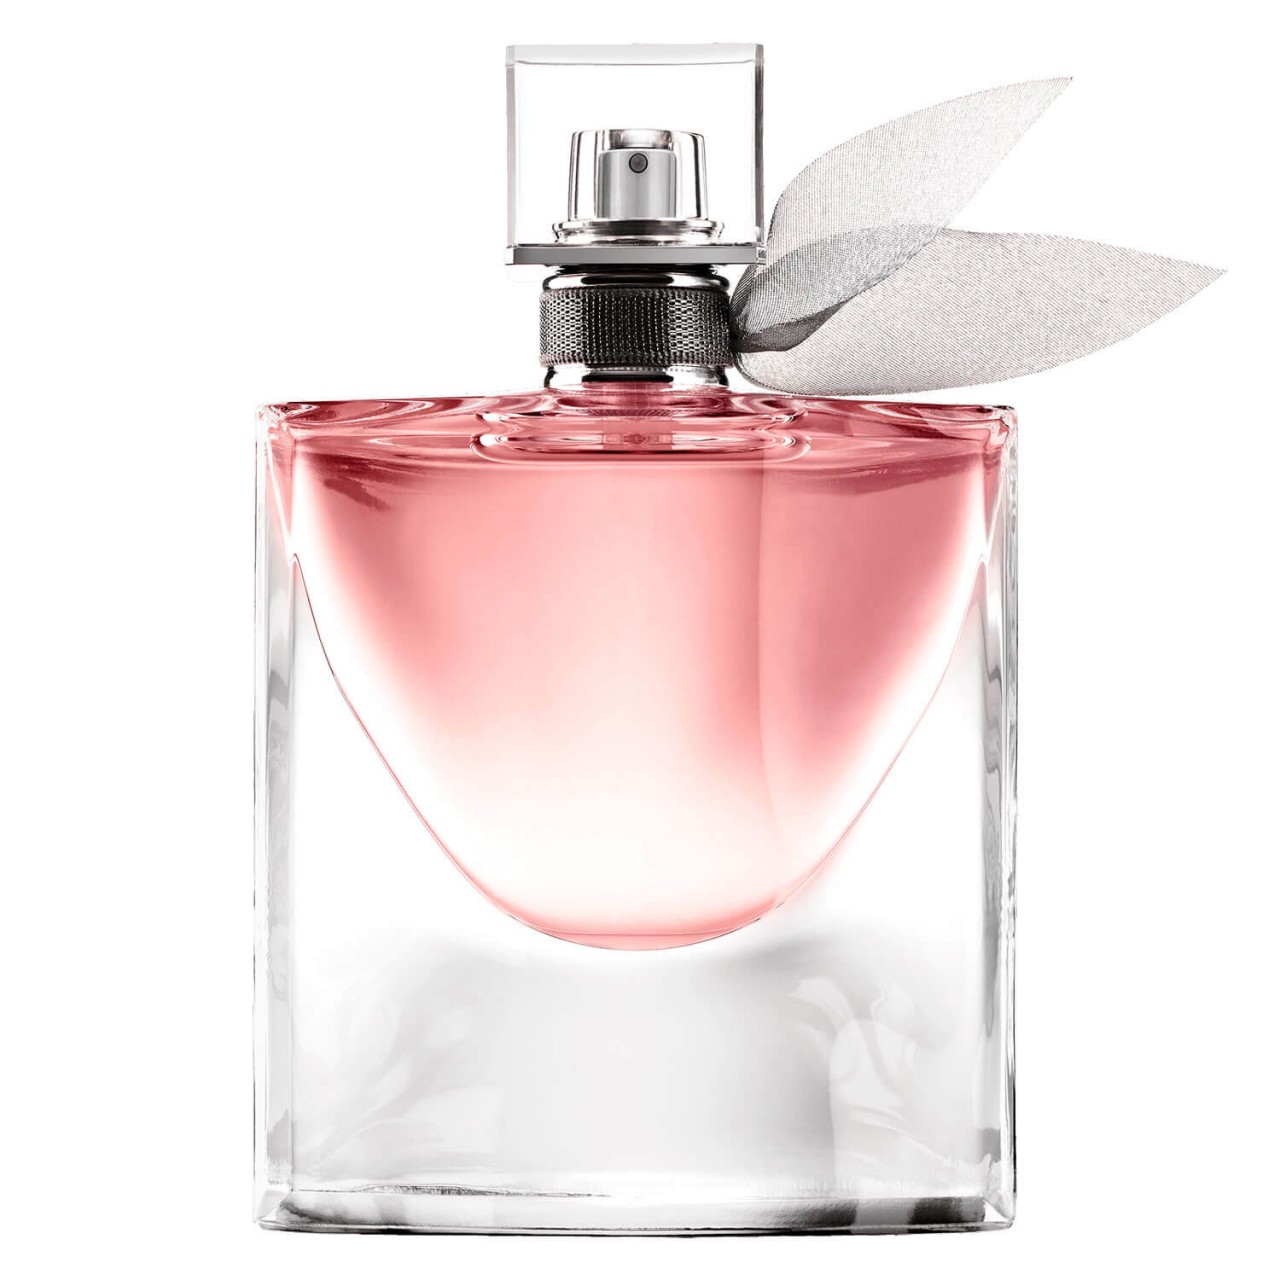 La Vie est Belle - Eau de Parfum von Lancôme